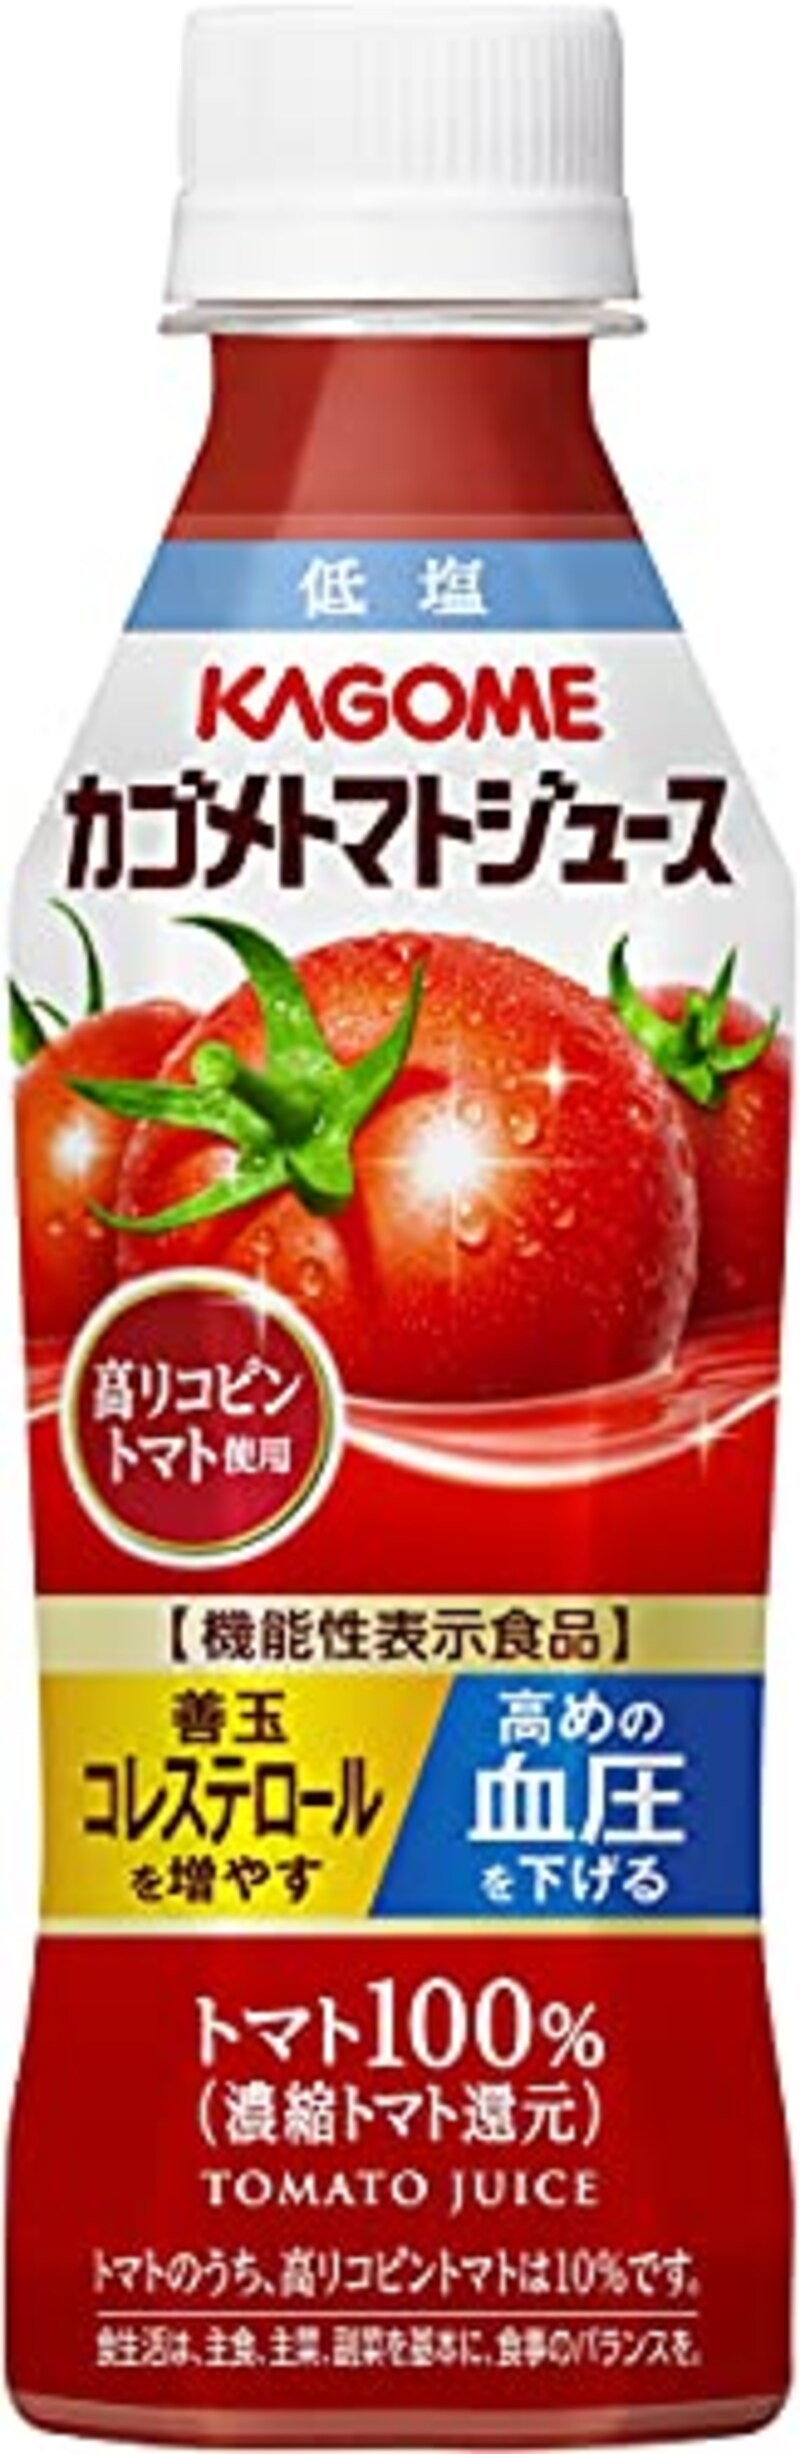 カゴメ,トマトジュース 高リコピントマト使用